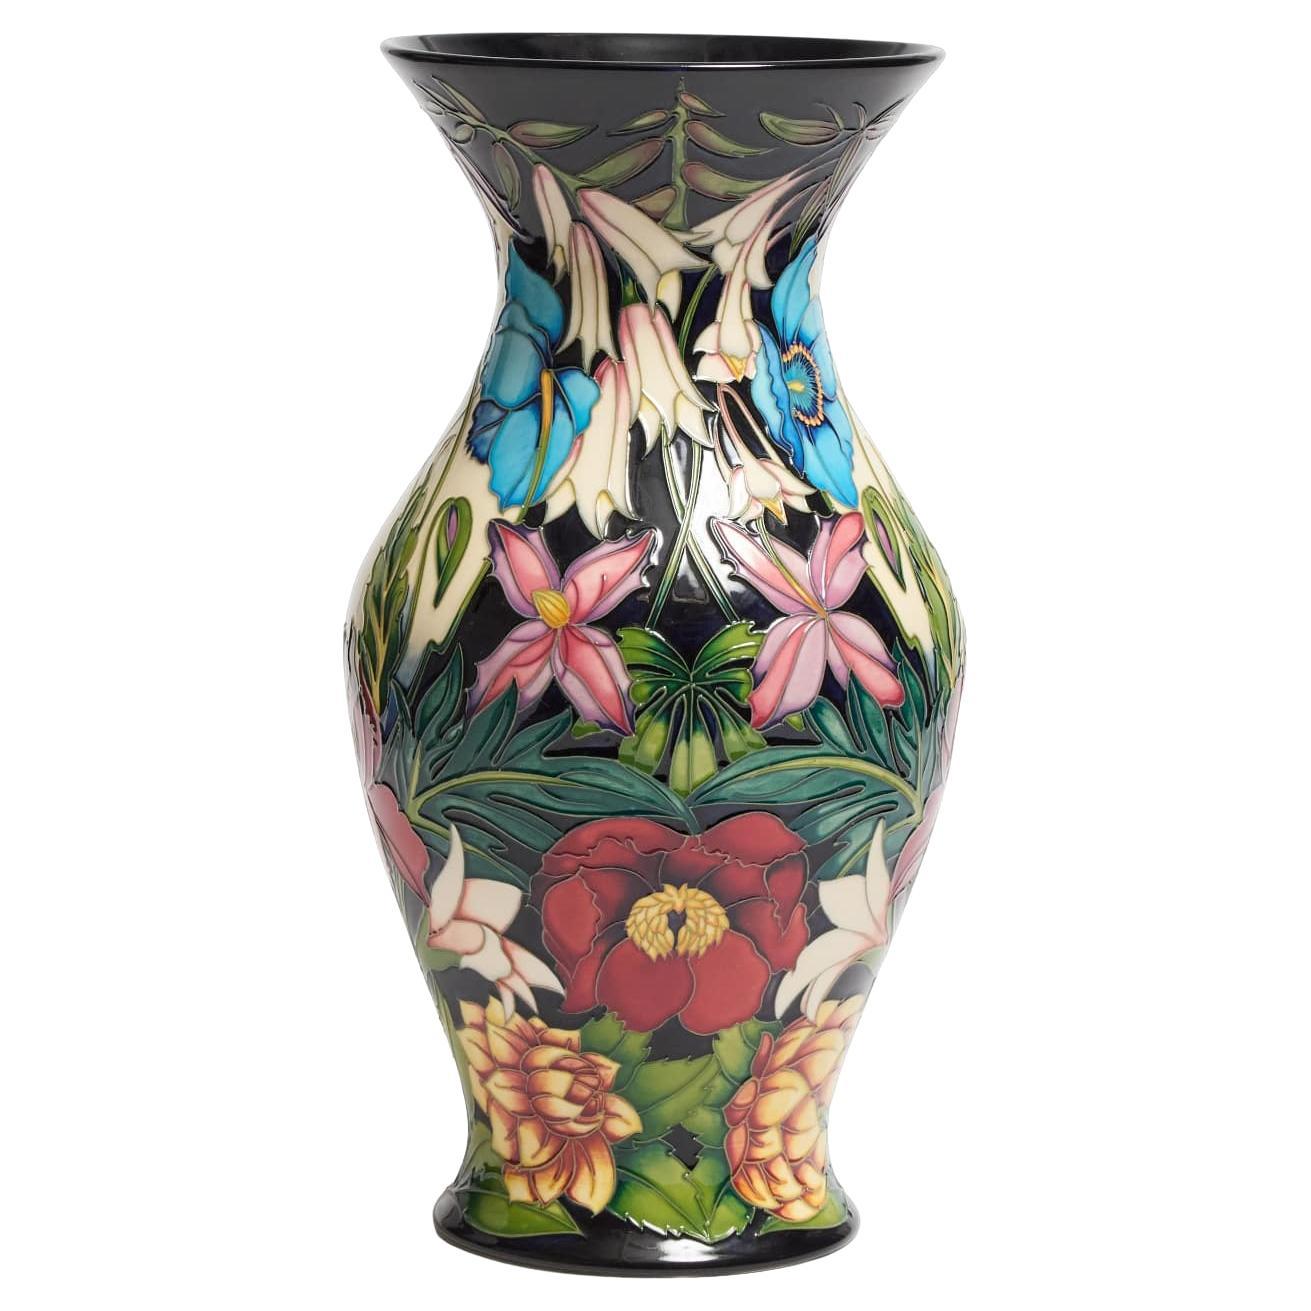 MOORCROFT 'Hidcote Manor' LARGE Vase, designed by Philip Gibson, 15/75, 2004